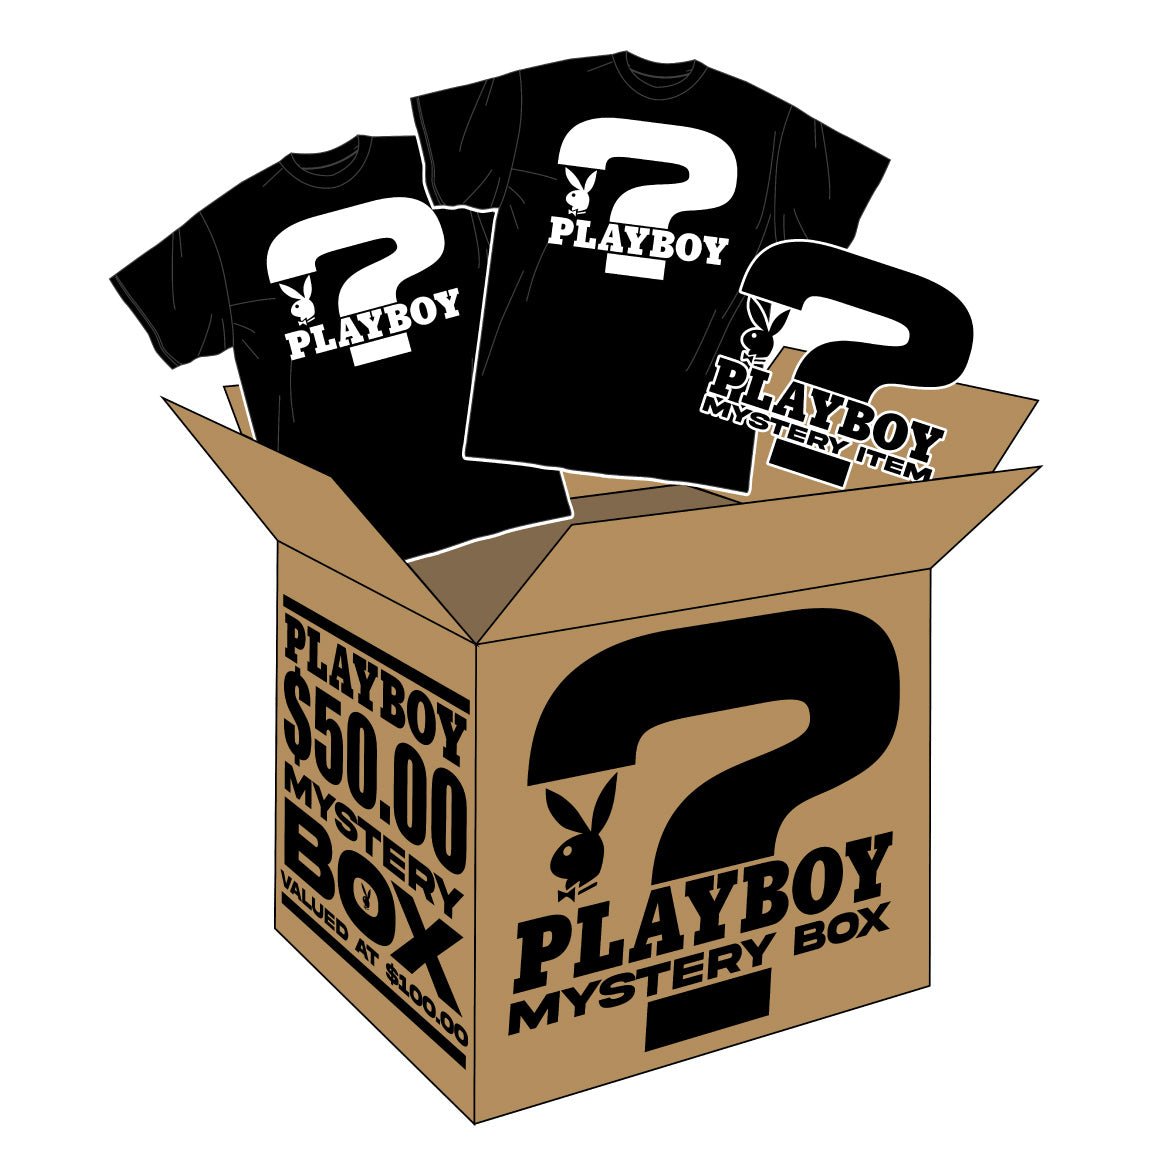 $50 Mystery Box ($100 Value)